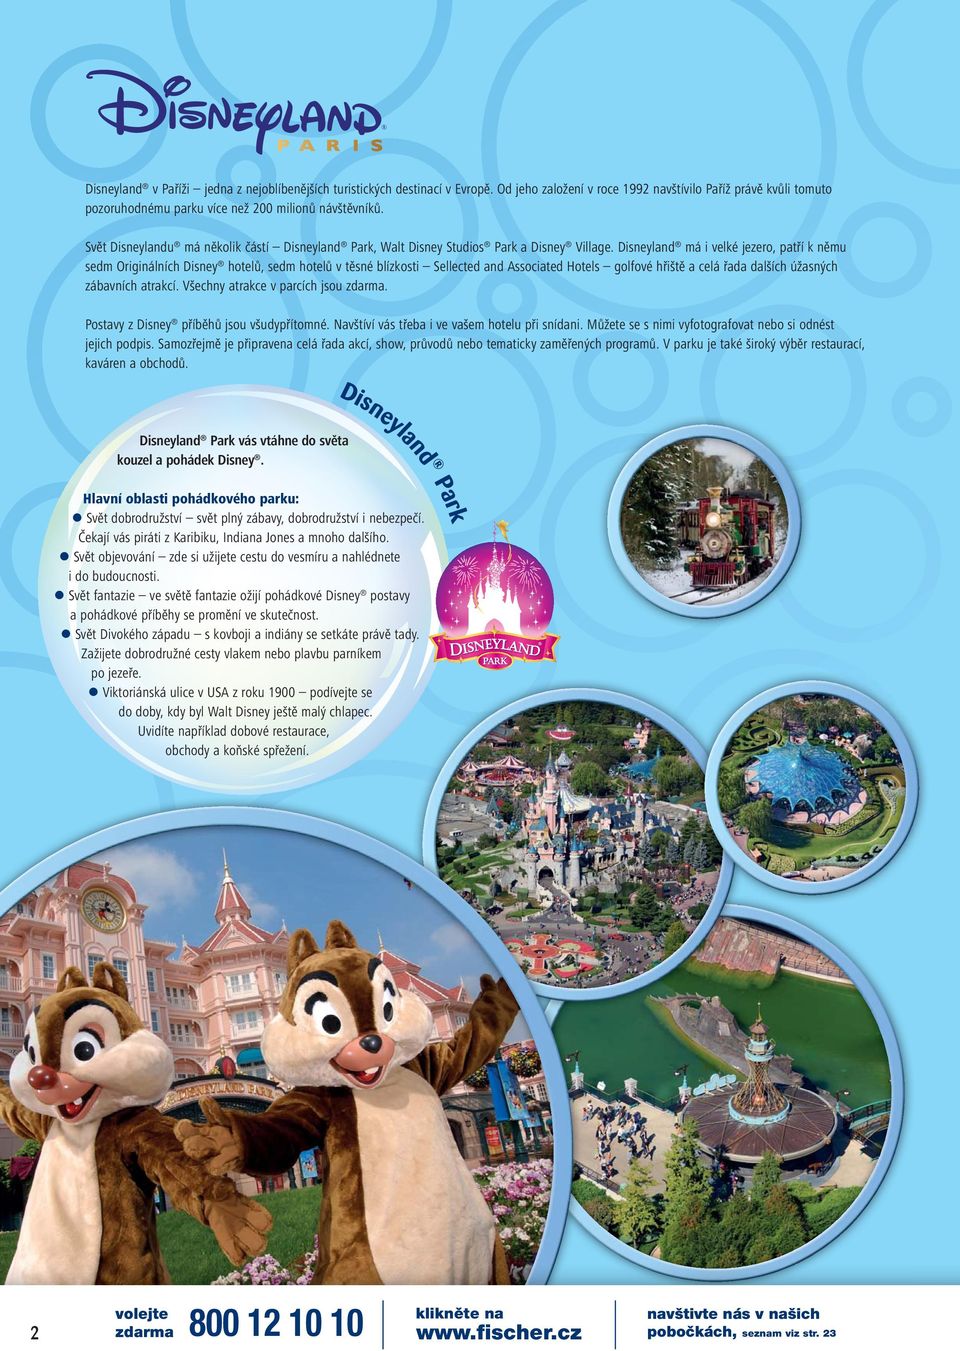 Disneyland má i velké jezero, patří k němu sedm Originálních Disney hotelů, sedm hotelů v těsné blízkosti Sellected and Associated Hotels golfové hřiště a celá řada dalších úžasných zábavních atrakcí.